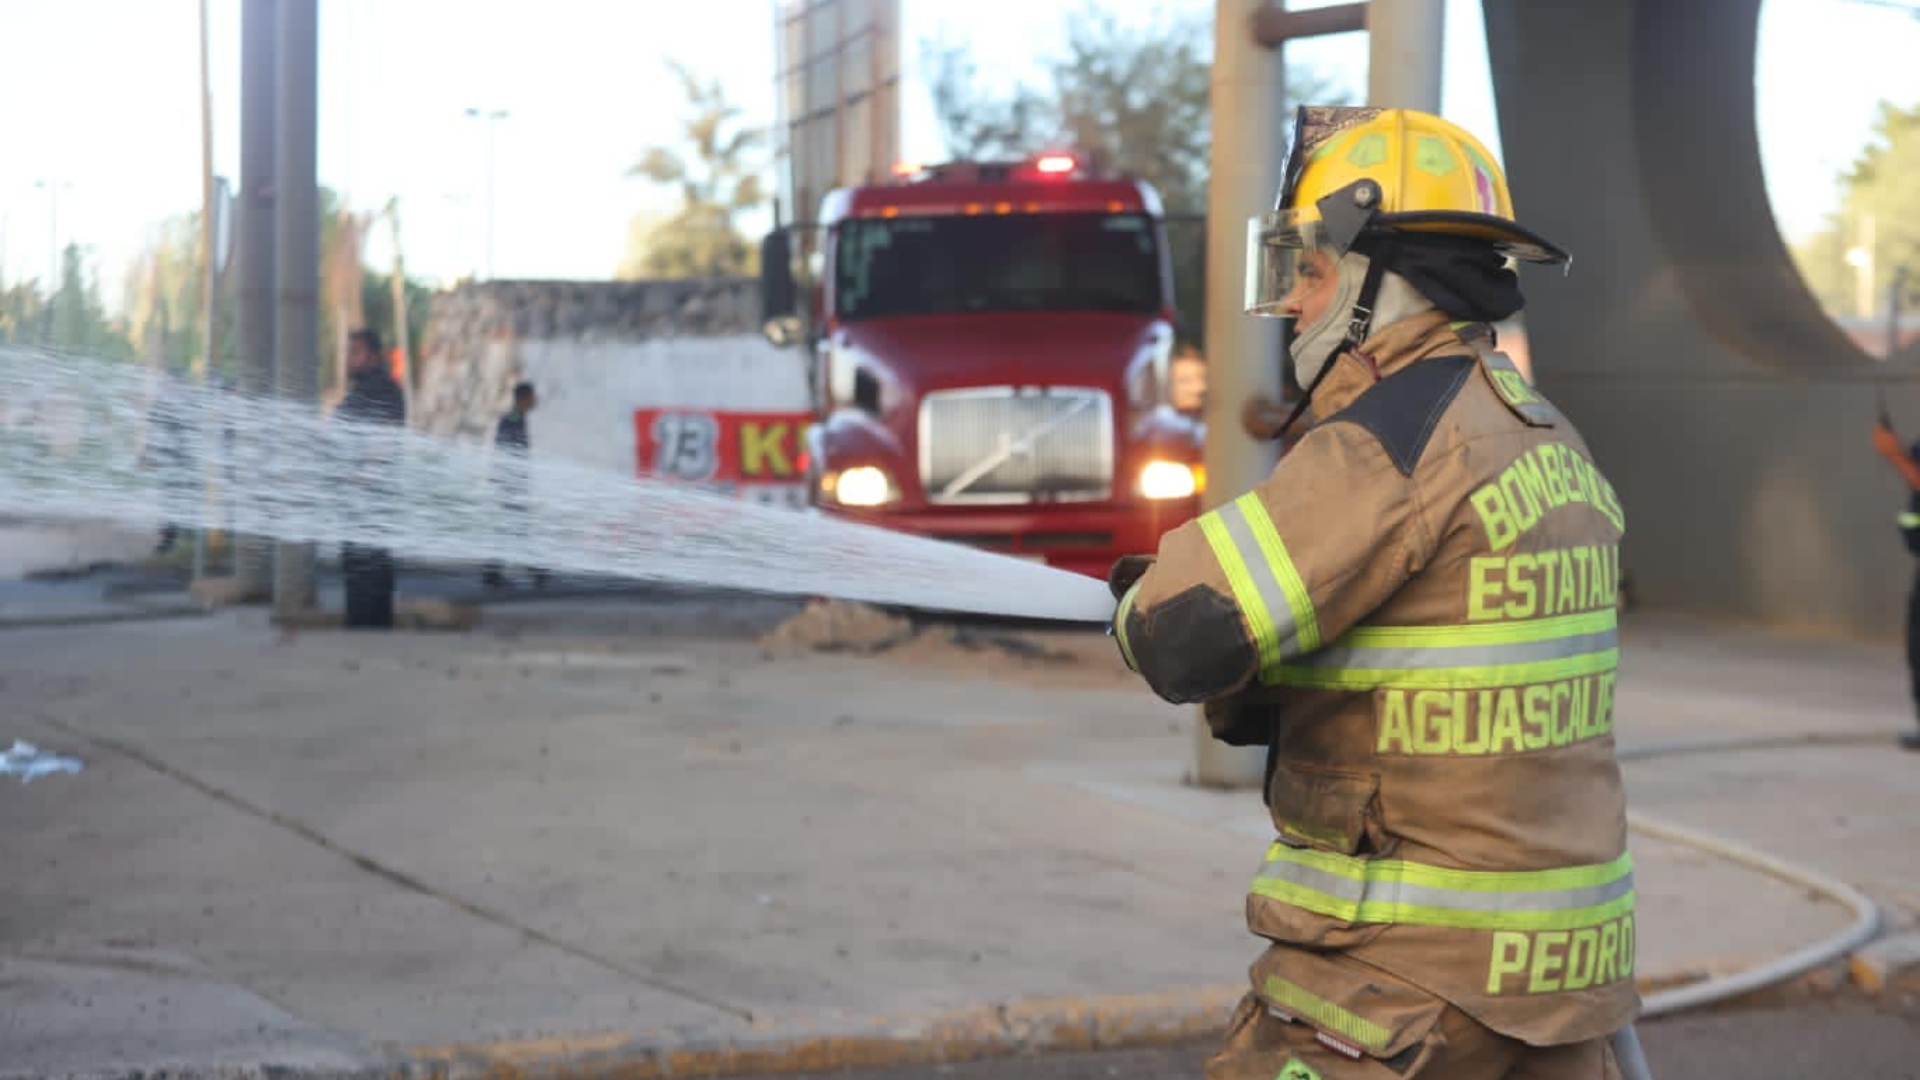 Personal del Cuerpo de Bomberos acudió rápidamente para controlar las llamas. (Foto: Facebook/Leo Montañez)